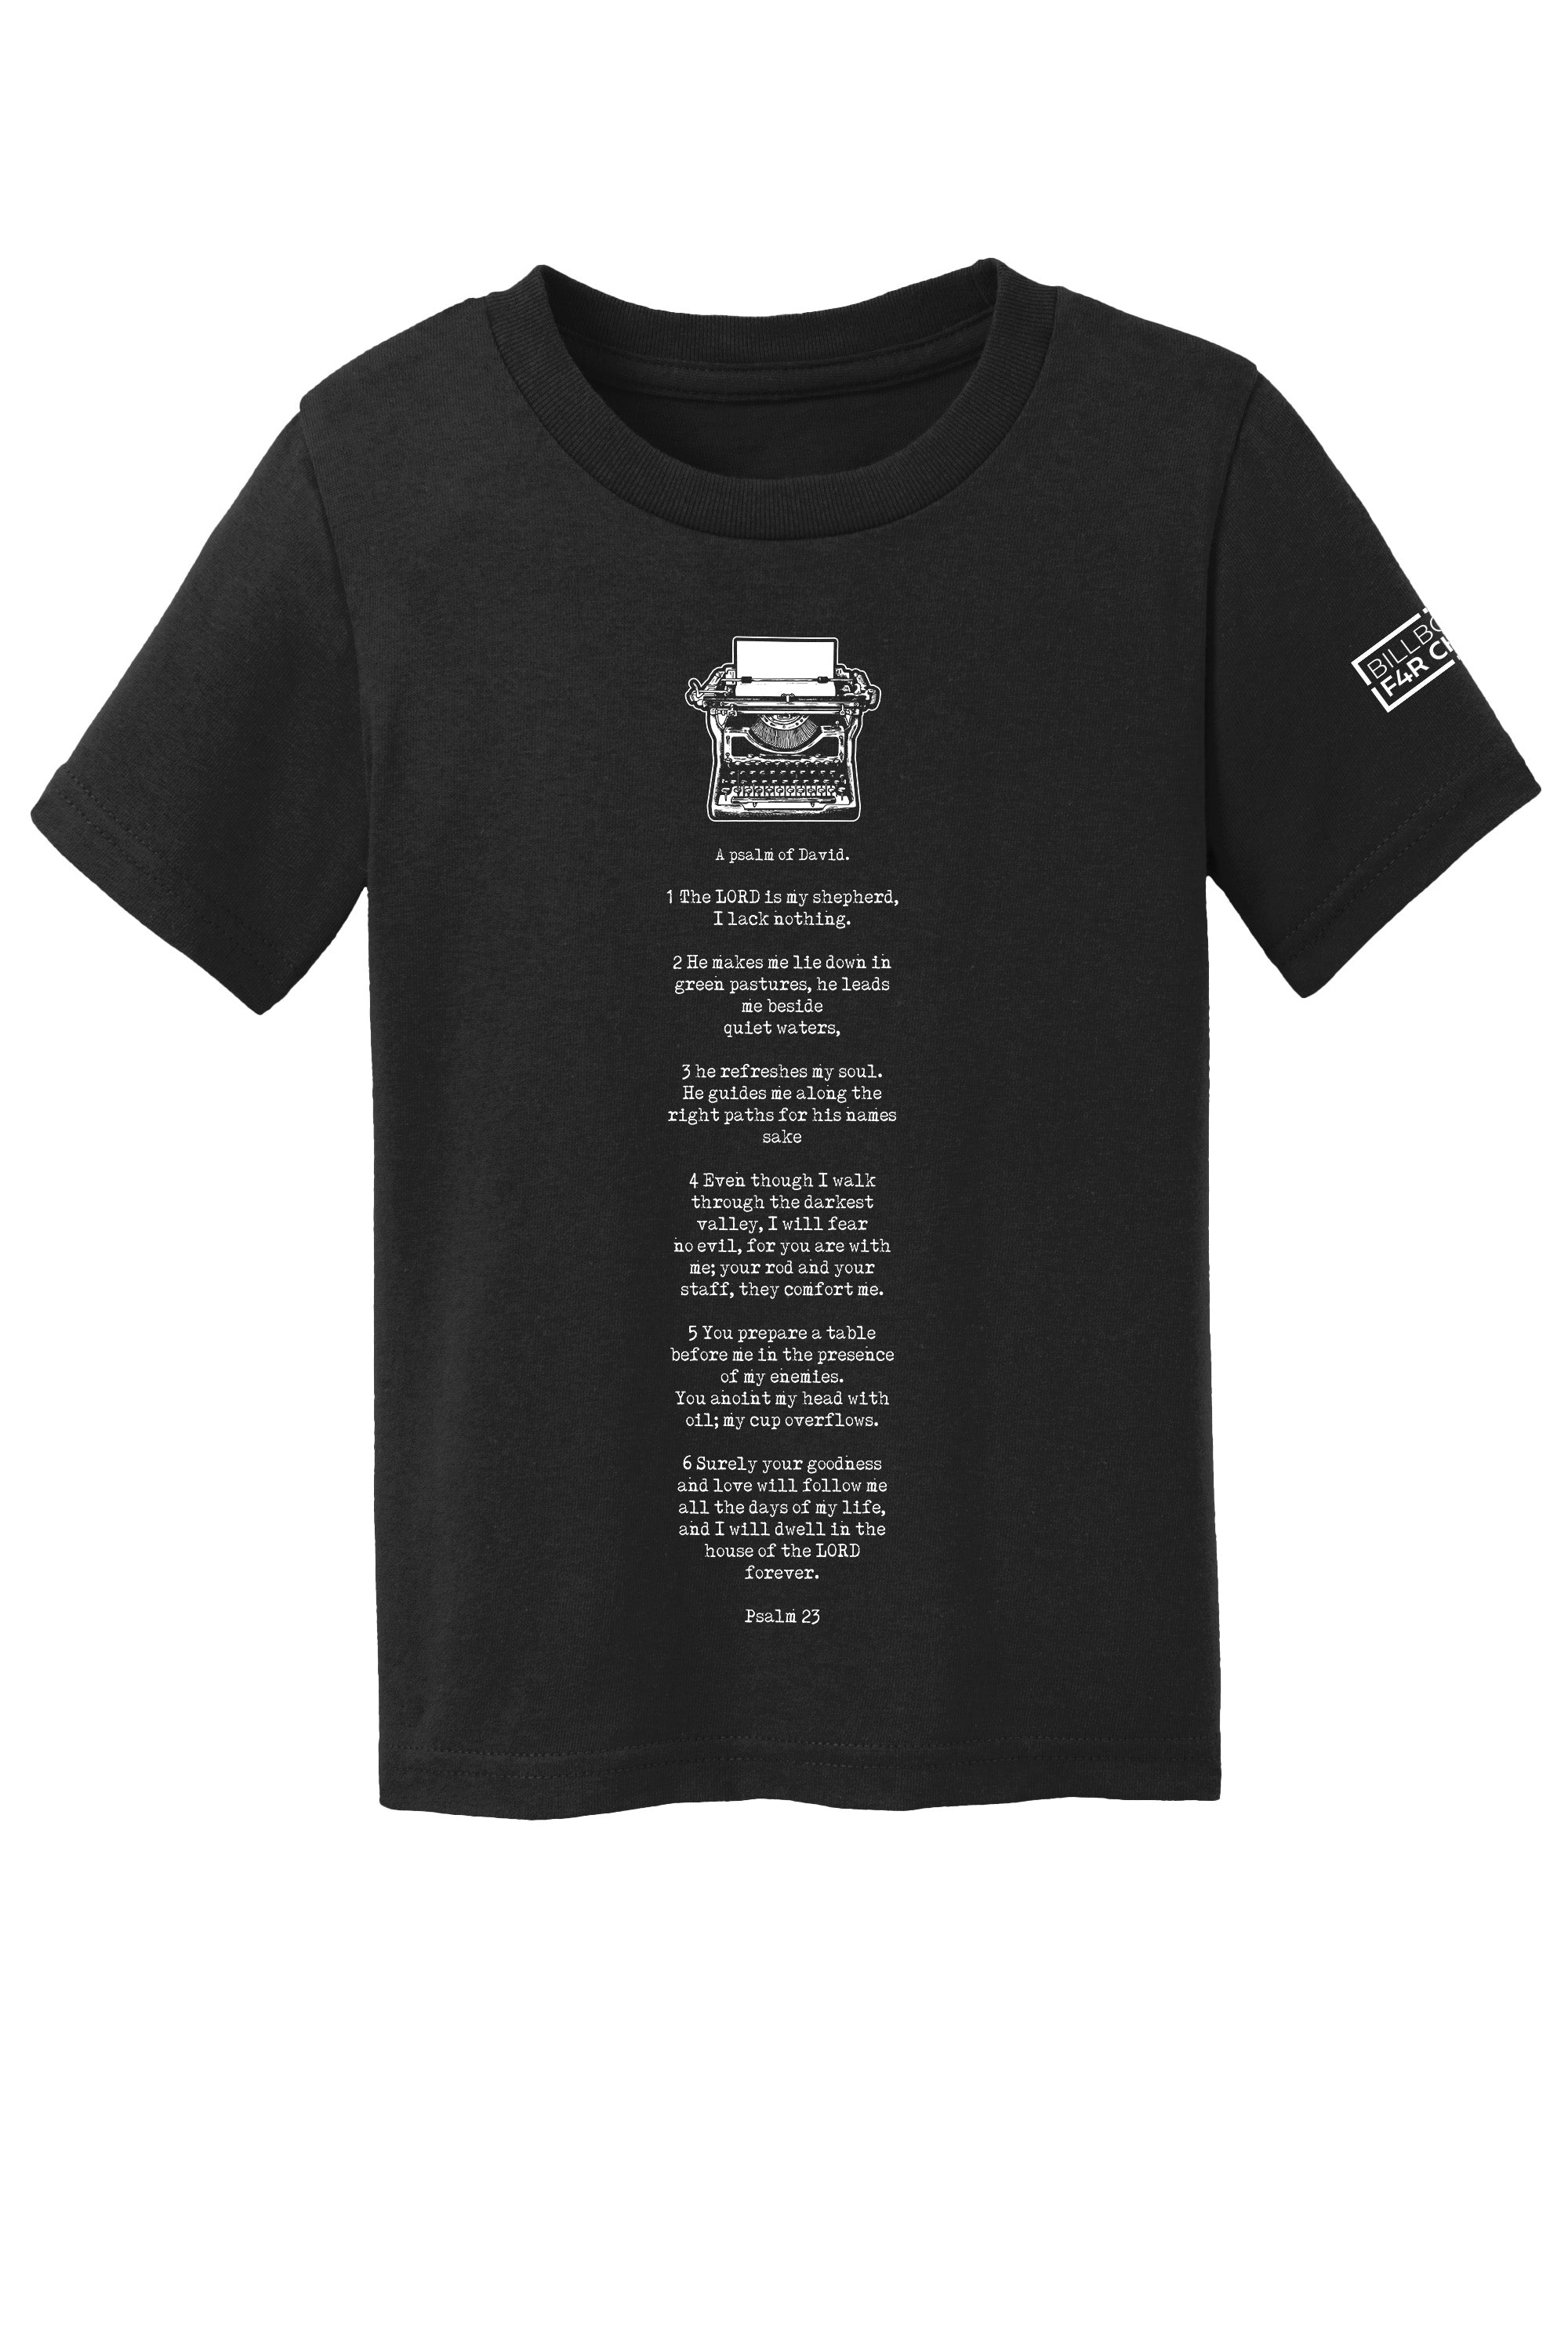 Psalm 23 Toddler T-Shirt